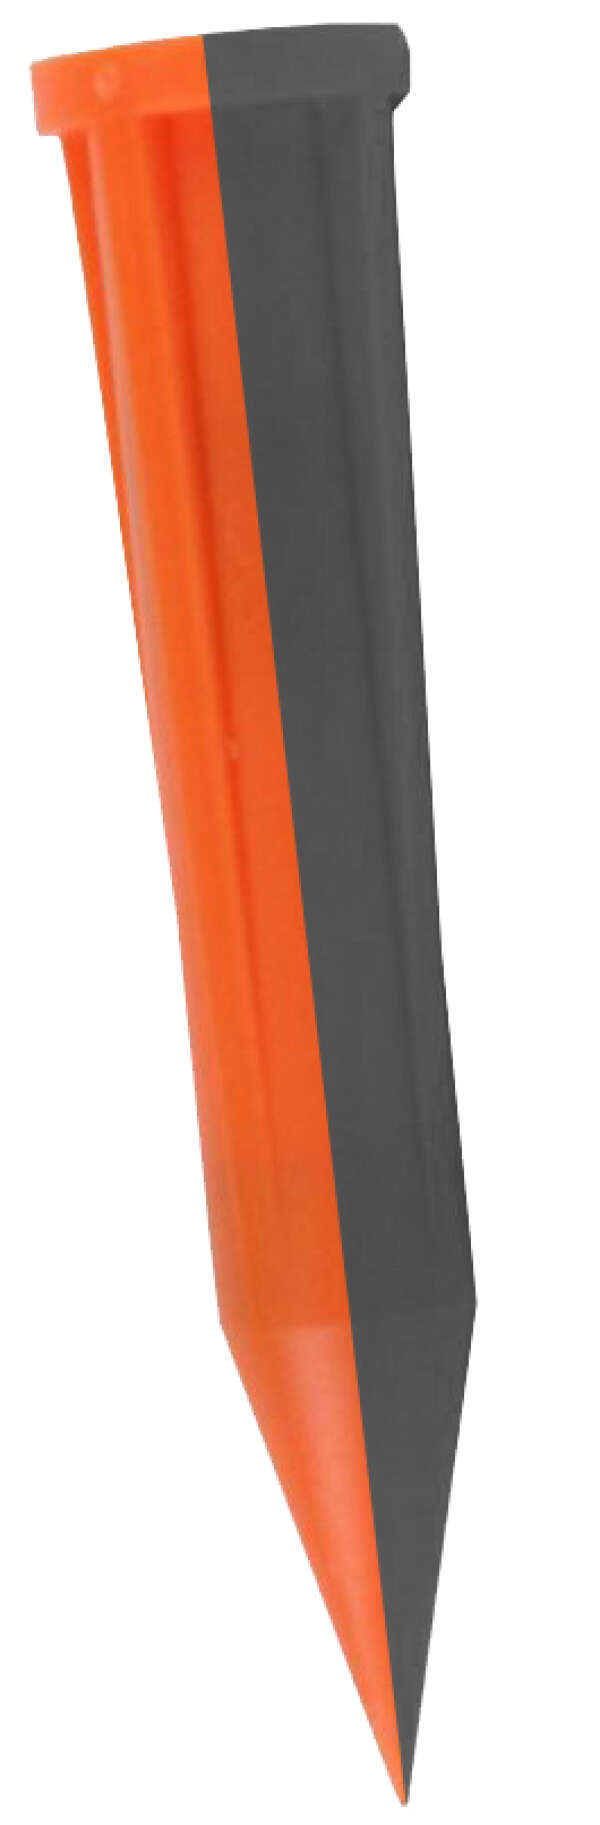 Tempo SpikeMarker SM-02 - пальчиковый маркер для КТВ (оранжевый/черный; 77 кГц; 50 шт)